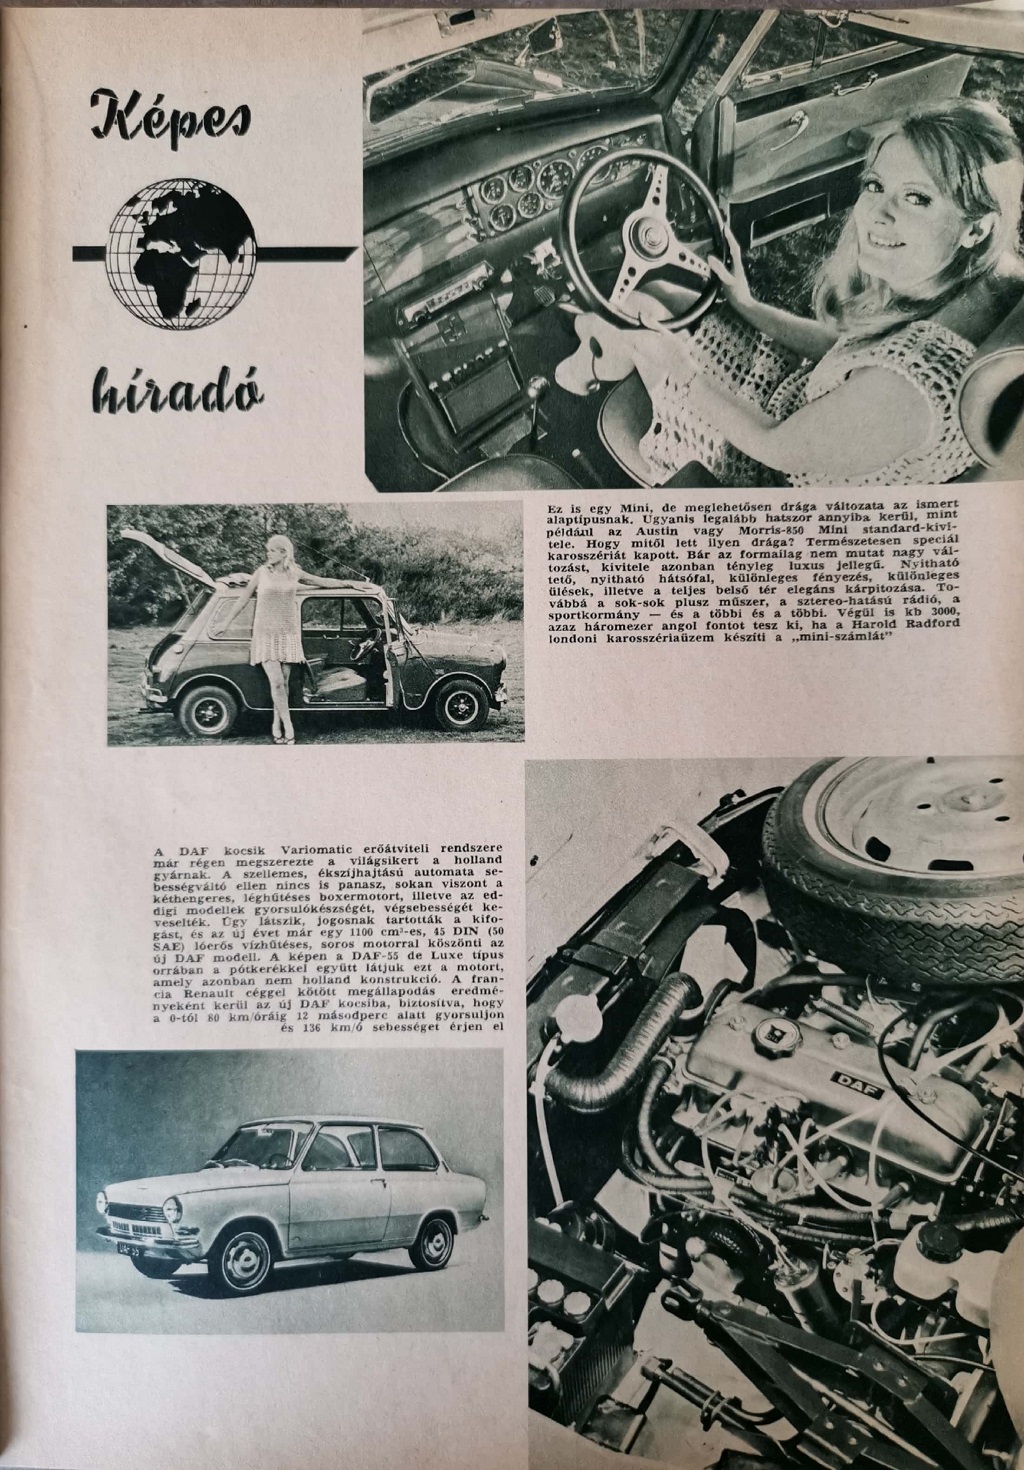 Kepes Hirado Mini Es Daf Auto Motor 1968 Auto Tesztek Tesztelok Hu